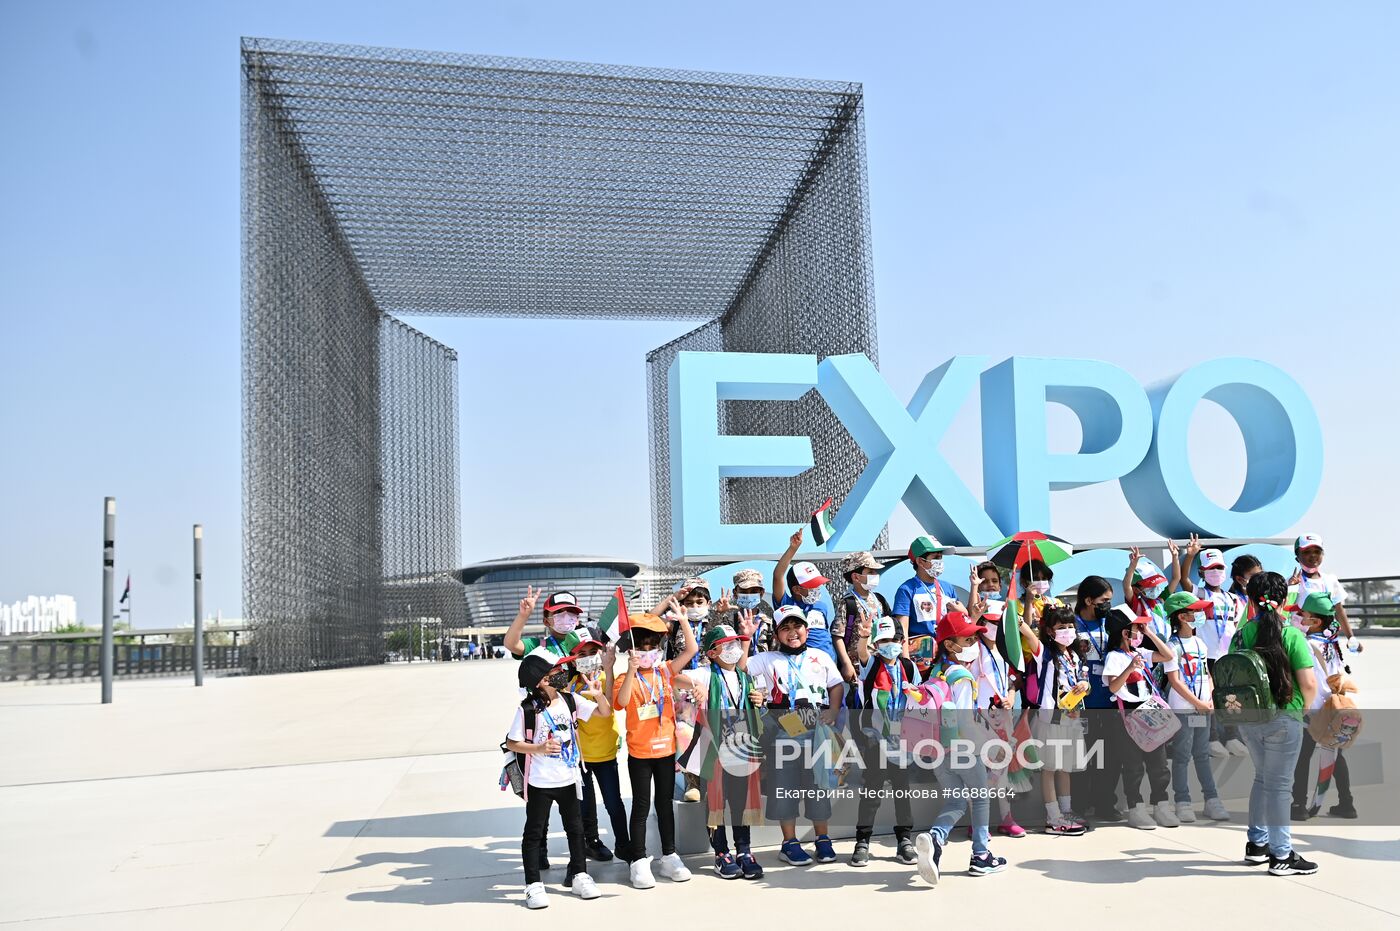 Выставка "Экспо-2020" в Дубае 